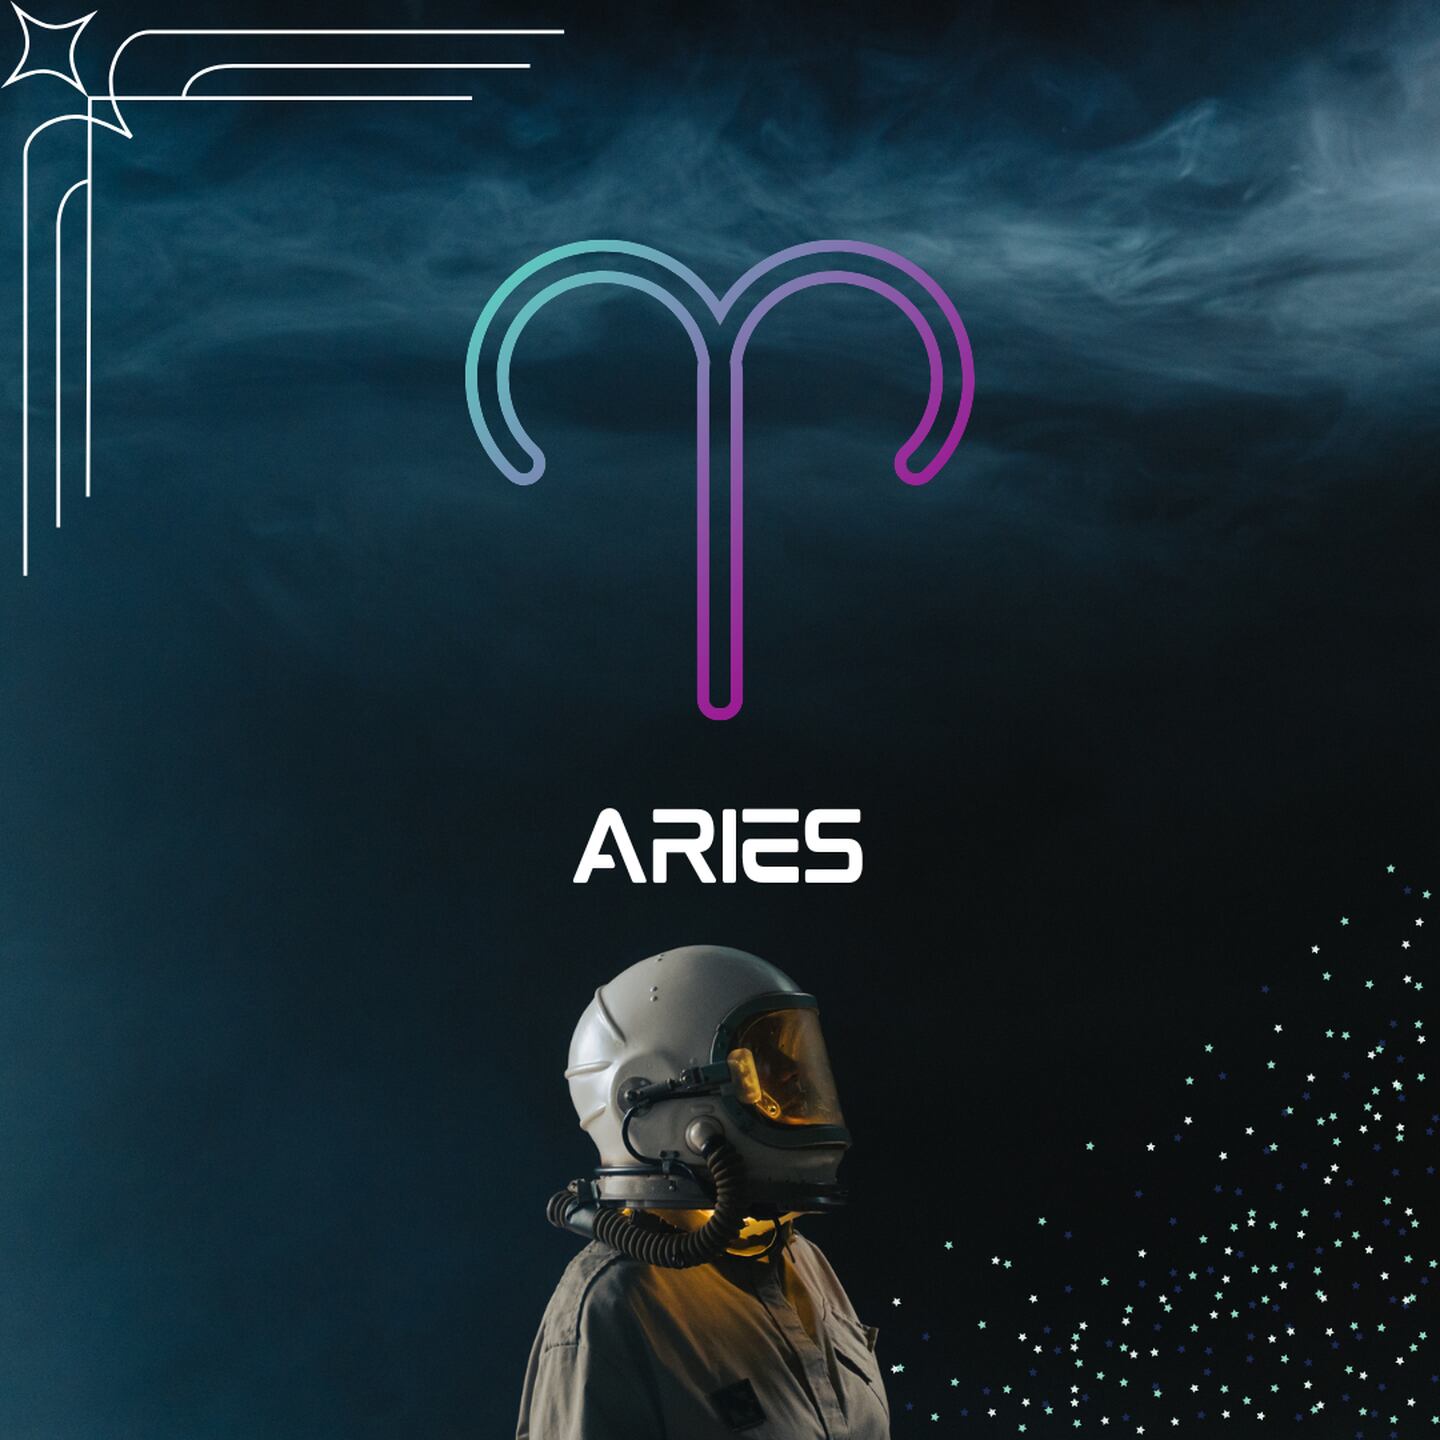 Sobre un fondo oscuro, con humo en la parte superior, aparece el símbolo de Aries. Al centro aparece el nombre del signo en color blanco y todavía más abajo, un astronauta está mirando hacia la derecha.